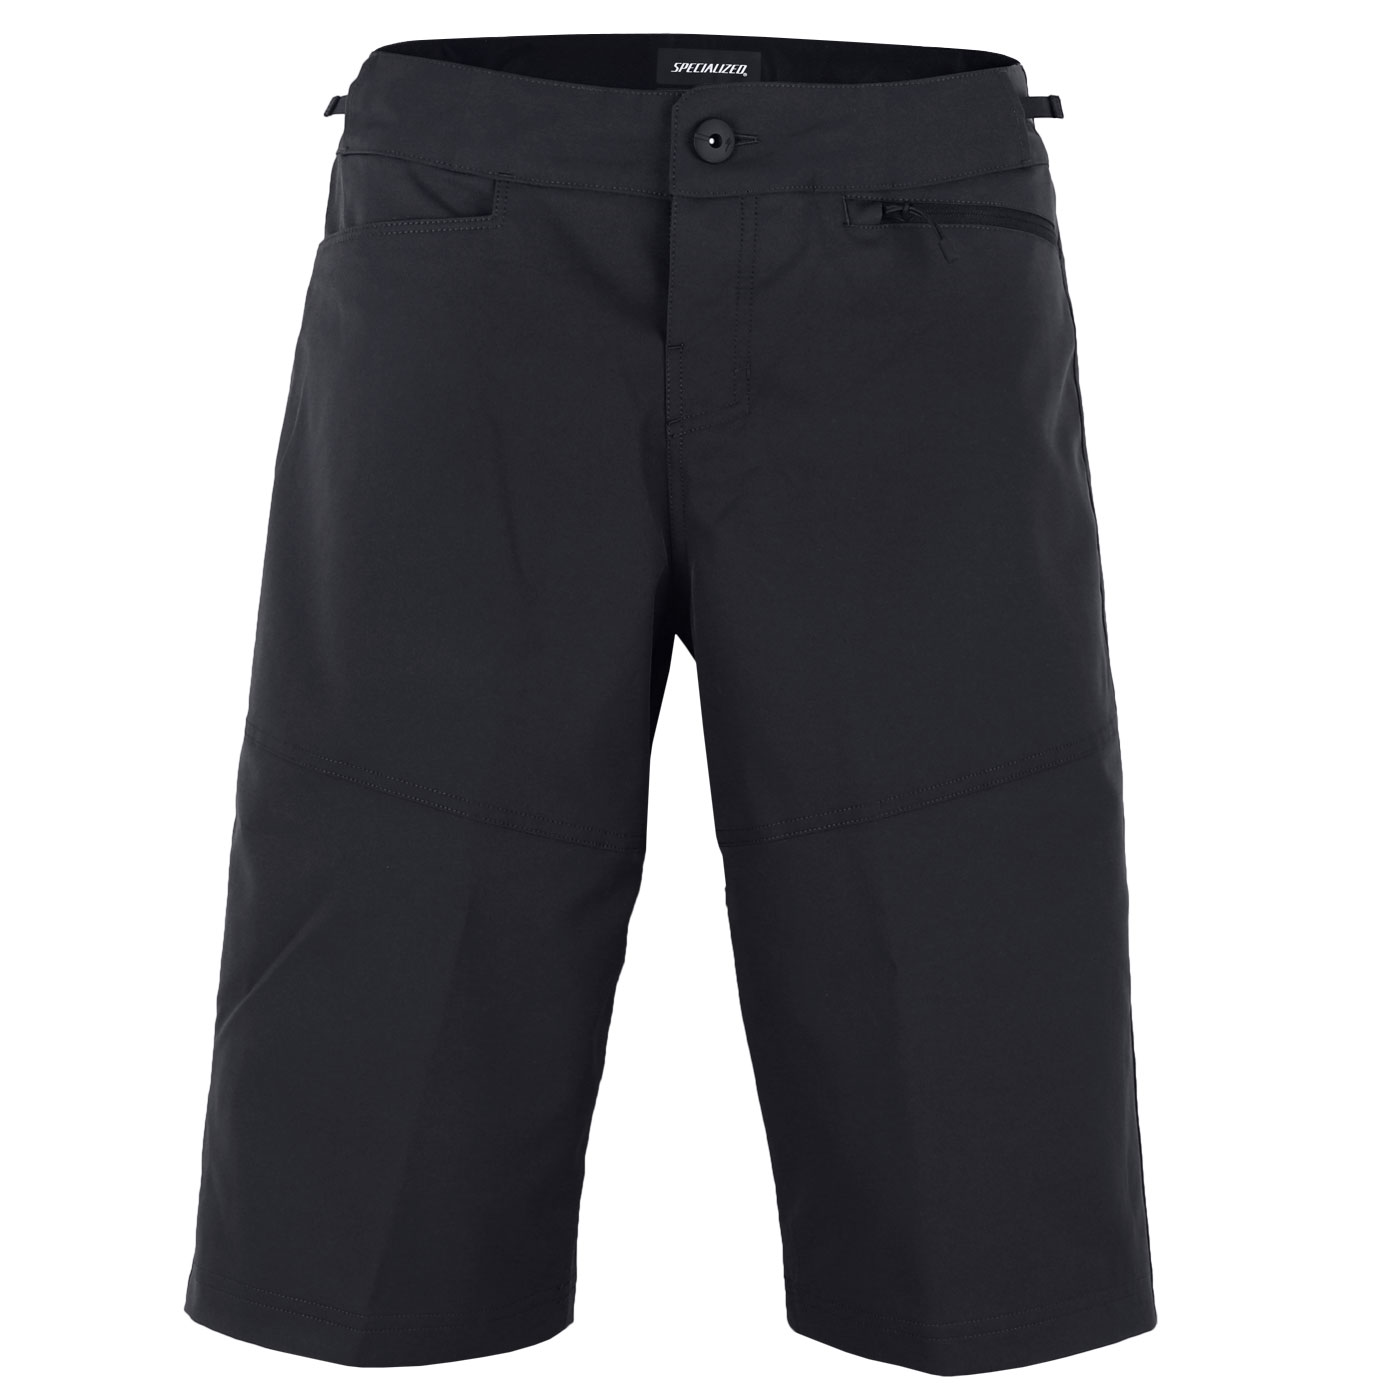 Produktbild von Specialized Trail Shorts mit Innenhose - schwarz